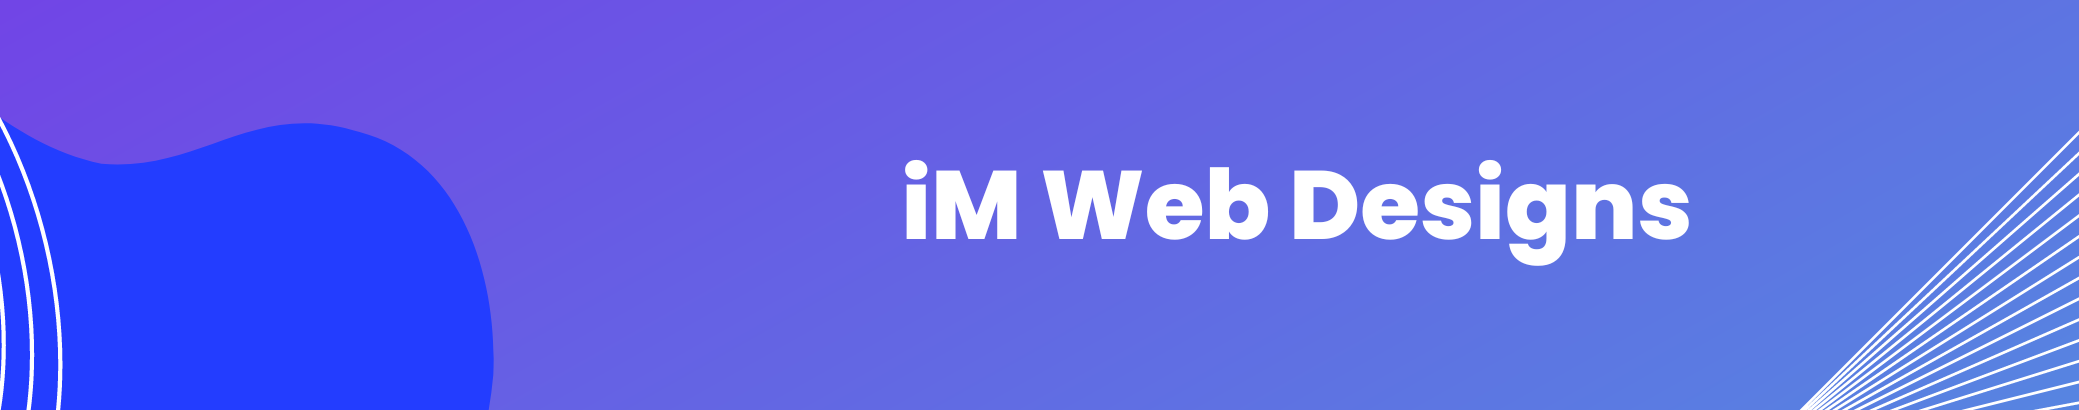 iM Web Designs's profile banner